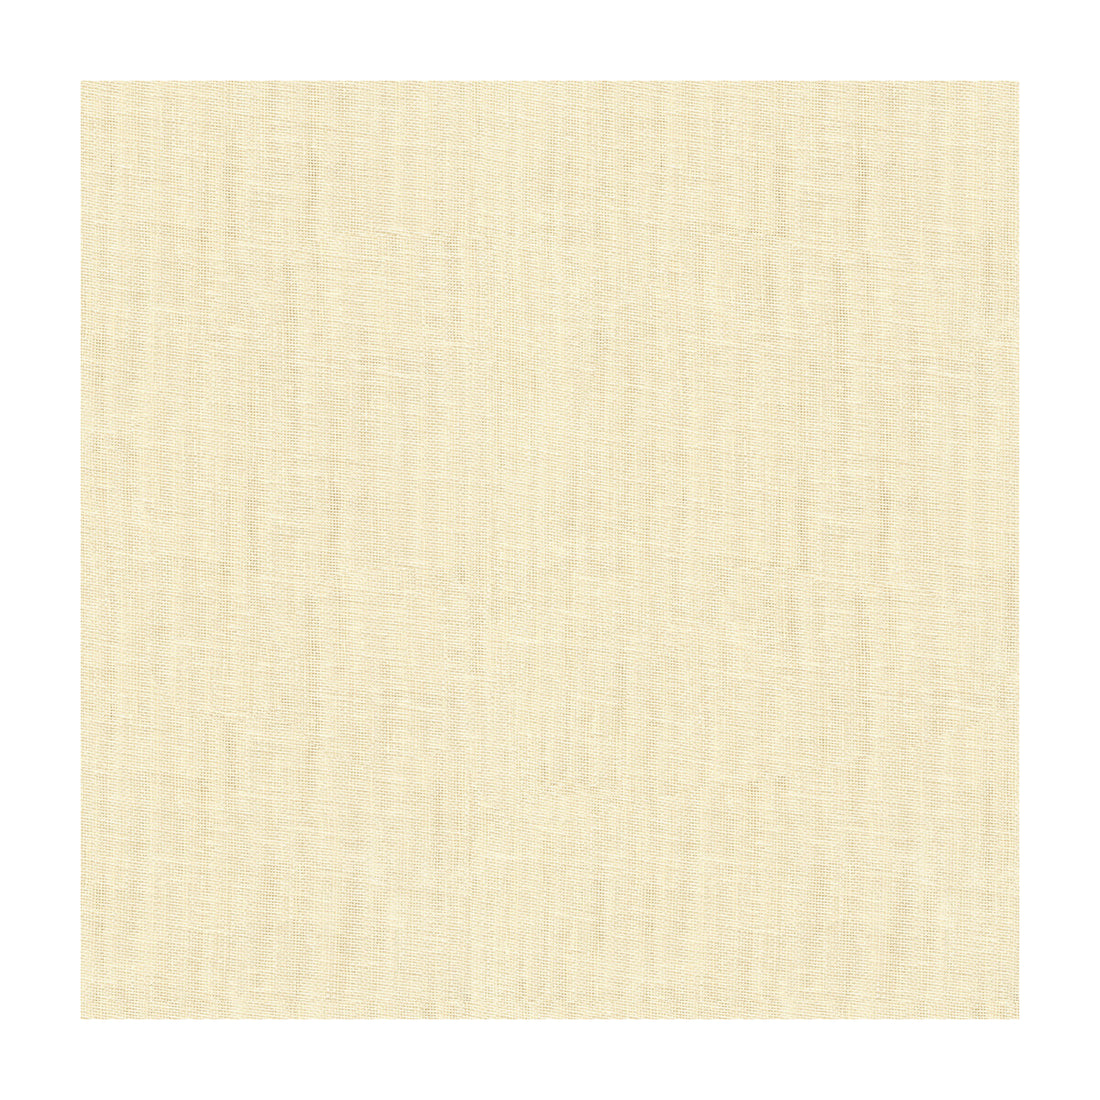 Kravet Basics fabric in 4112-1 color - pattern 4112.1.0 - by Kravet Basics